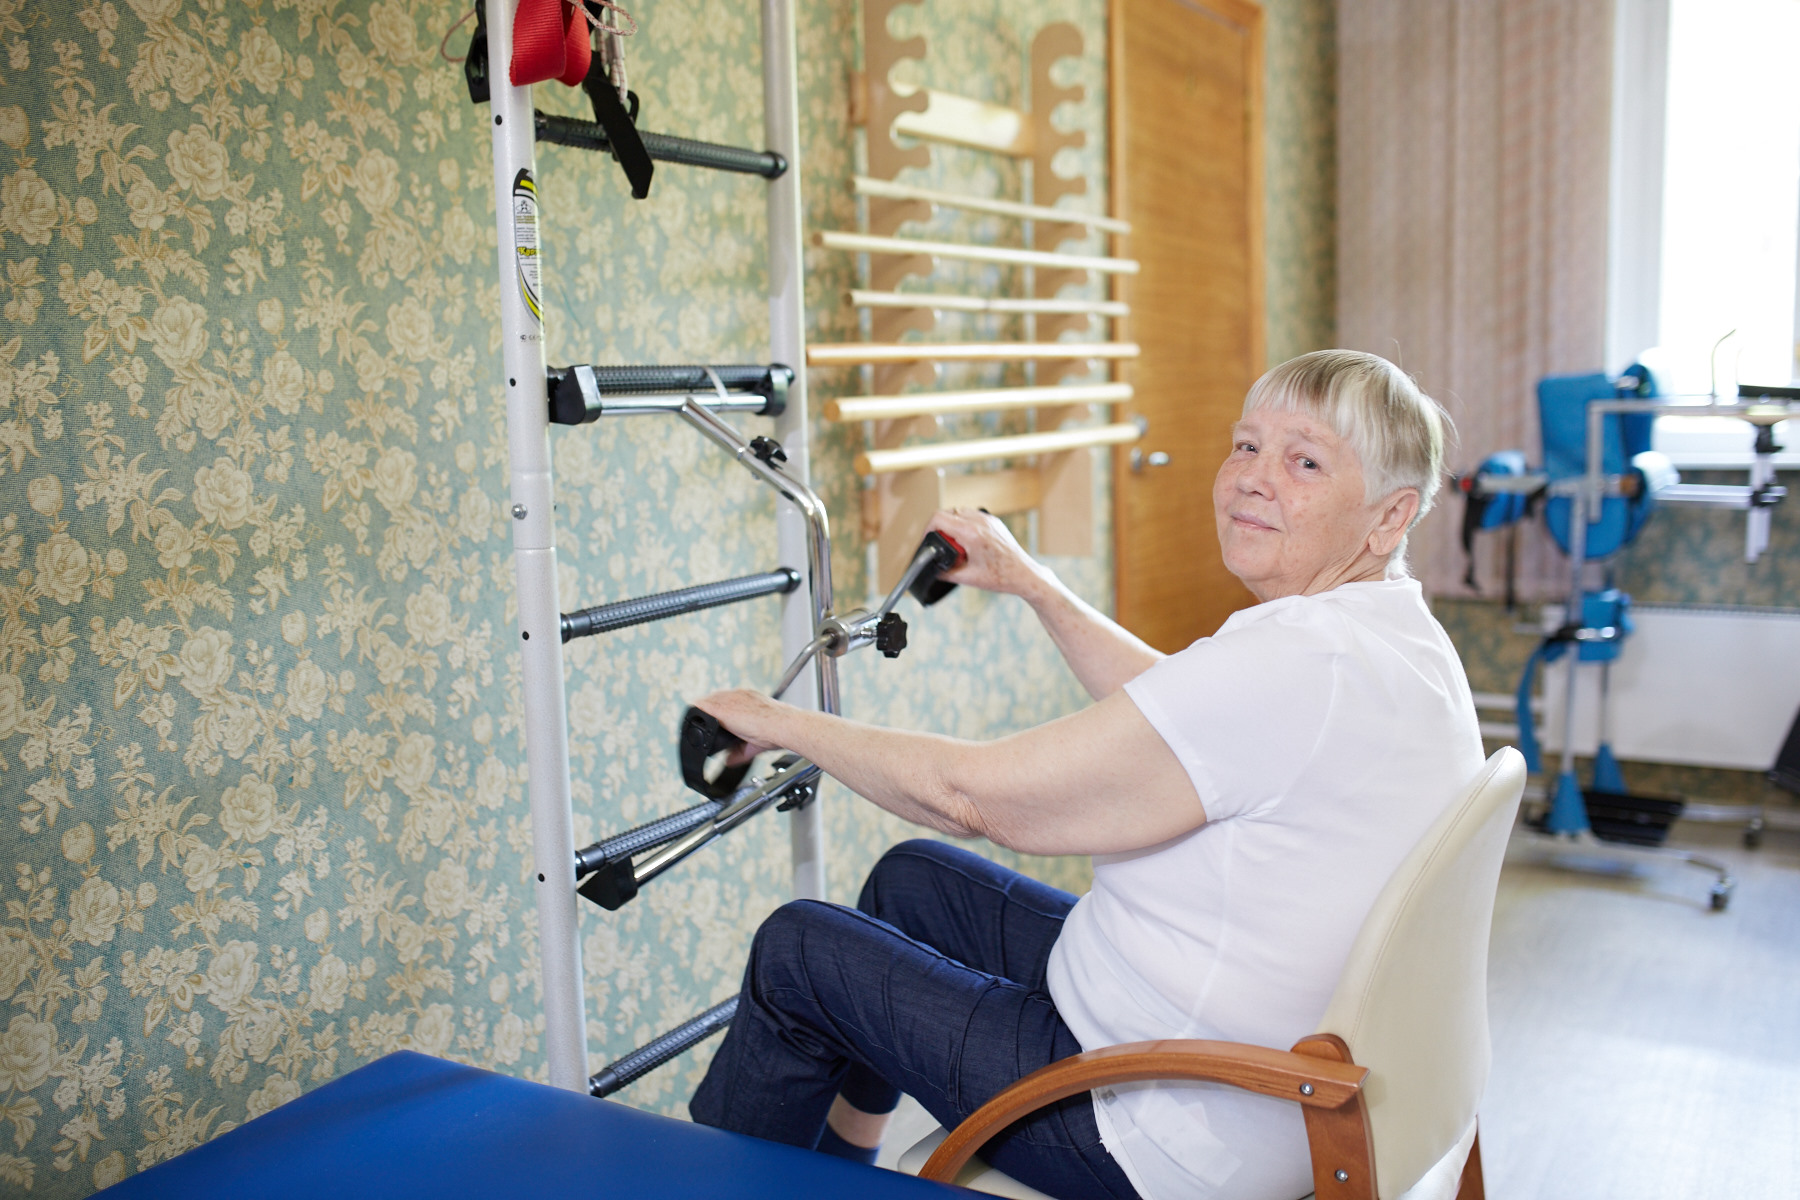 упражнения на шведской стенке для женщин после 50 лет